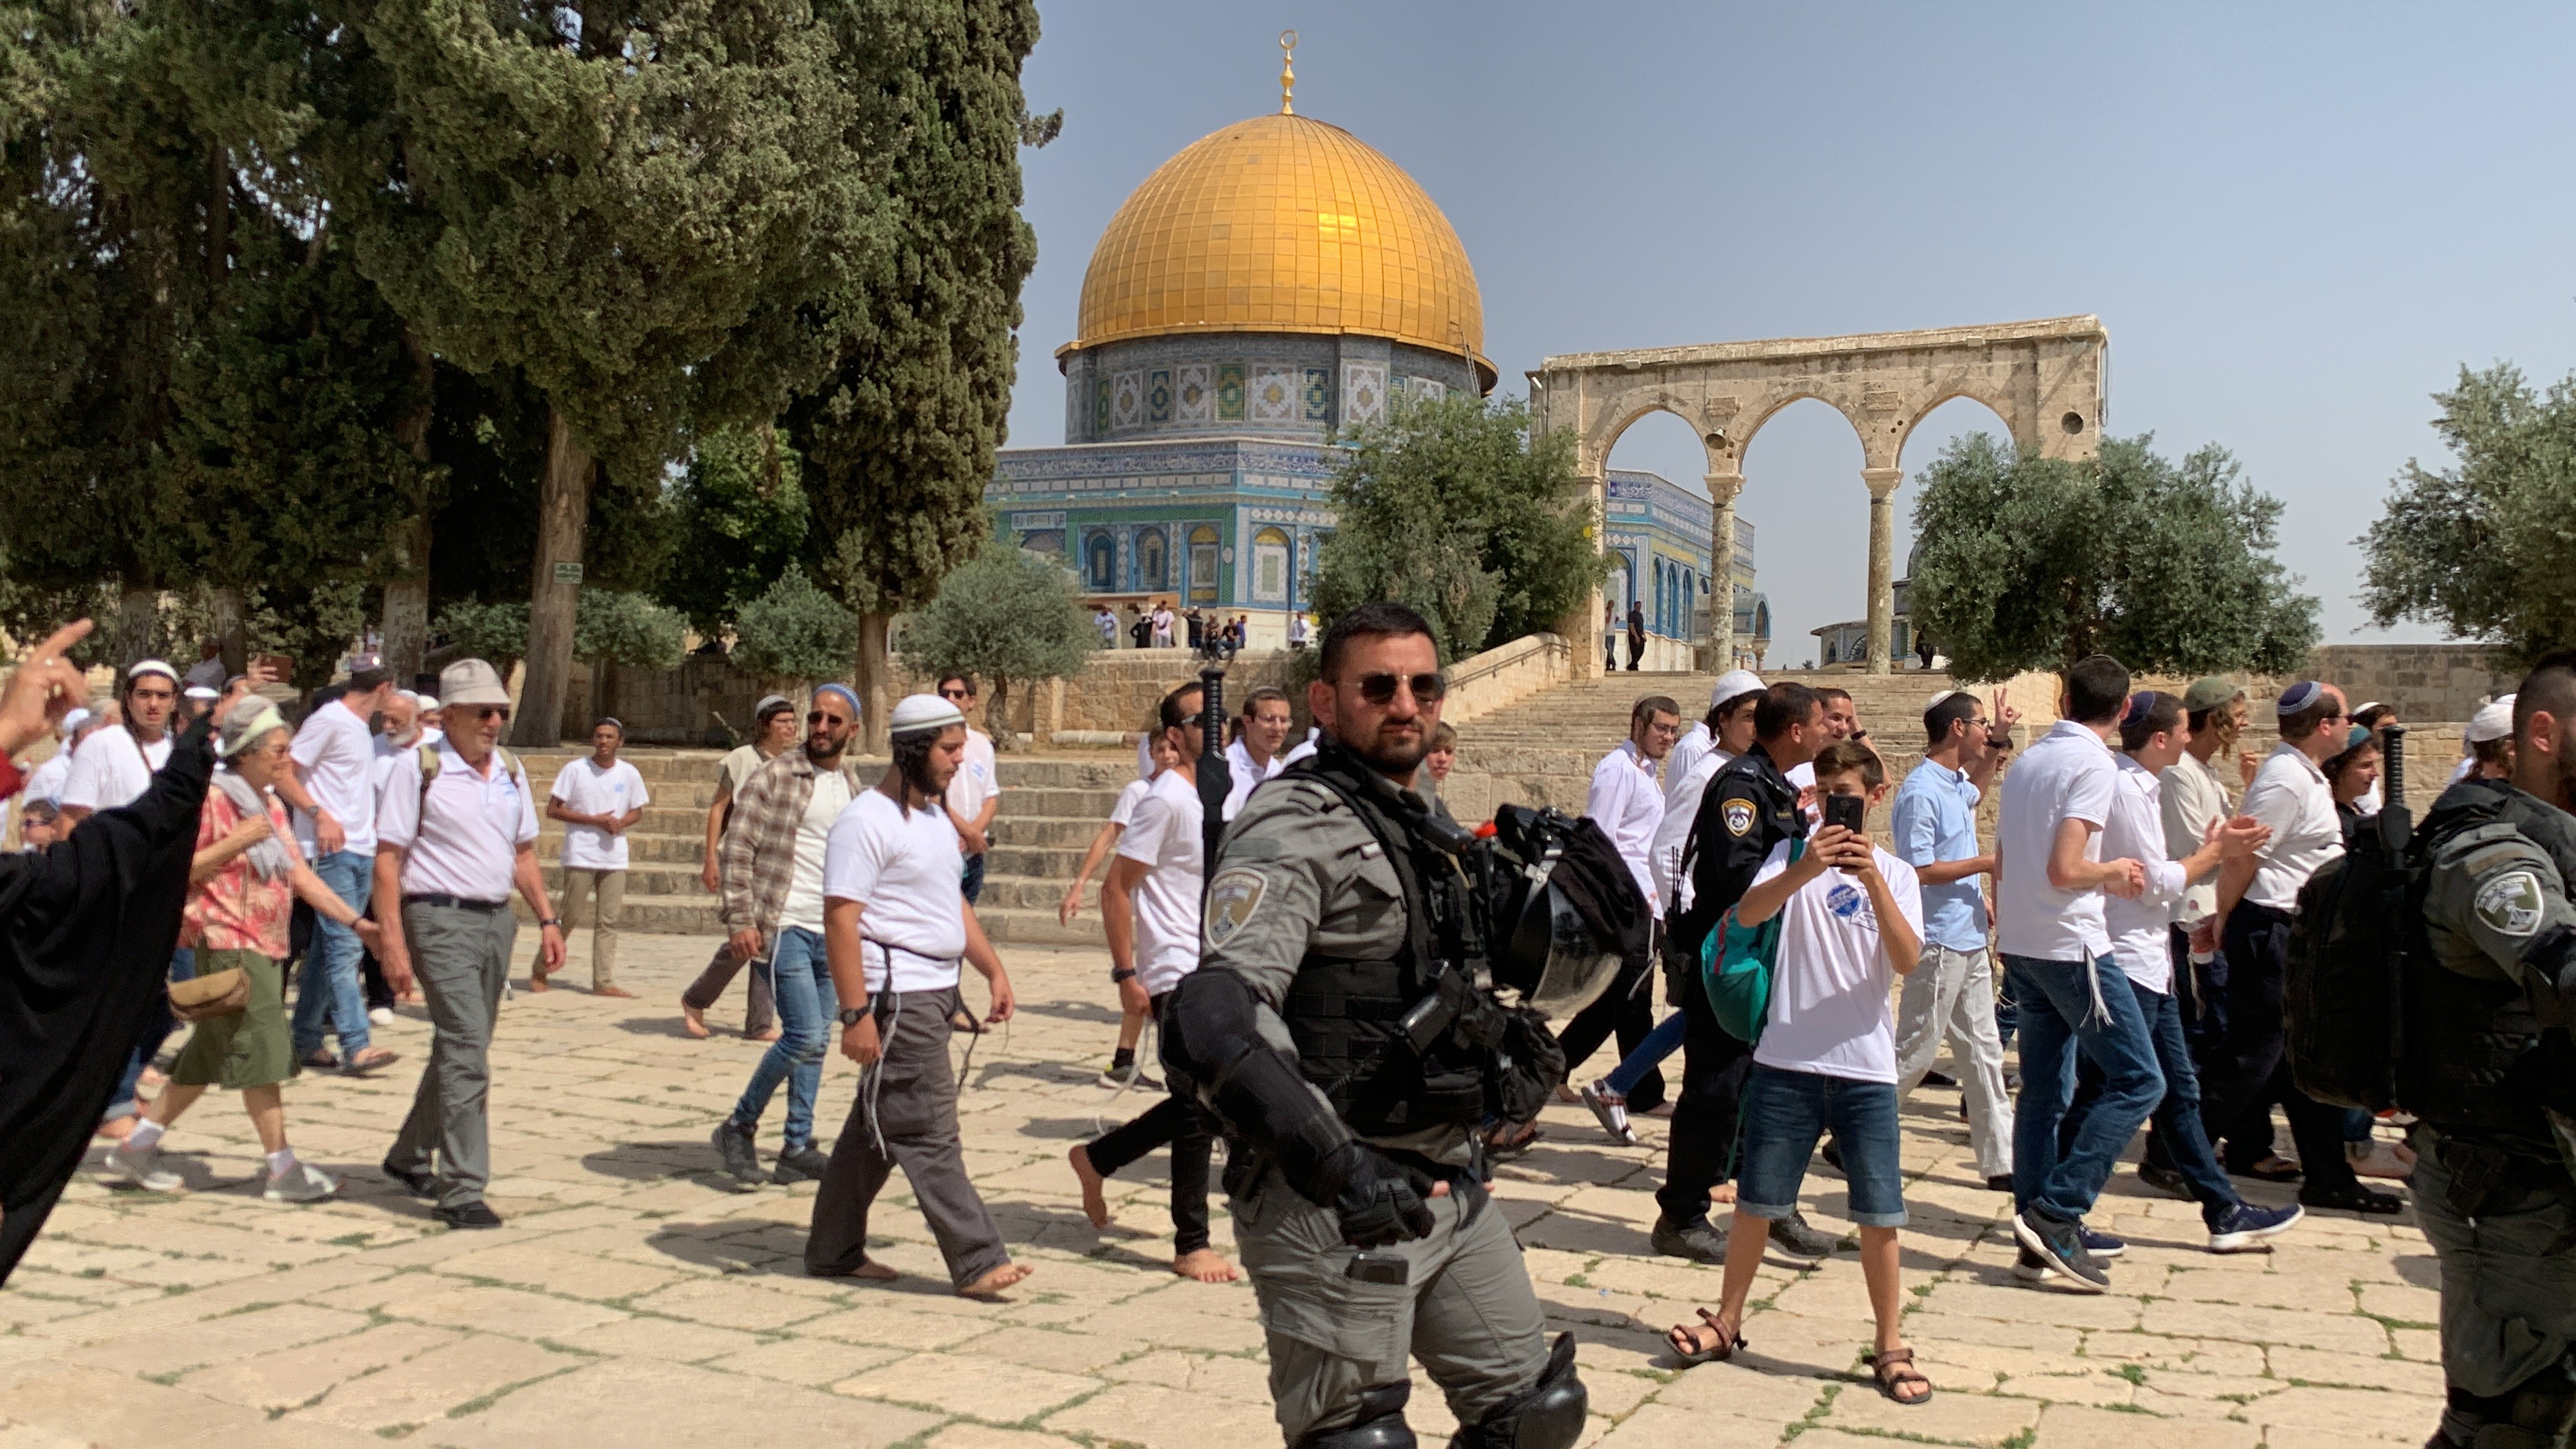 82 مستوطنًا و30 طالبًا يهوديًا يقتحمون الأقصى بحماية شرطة الاحتلال